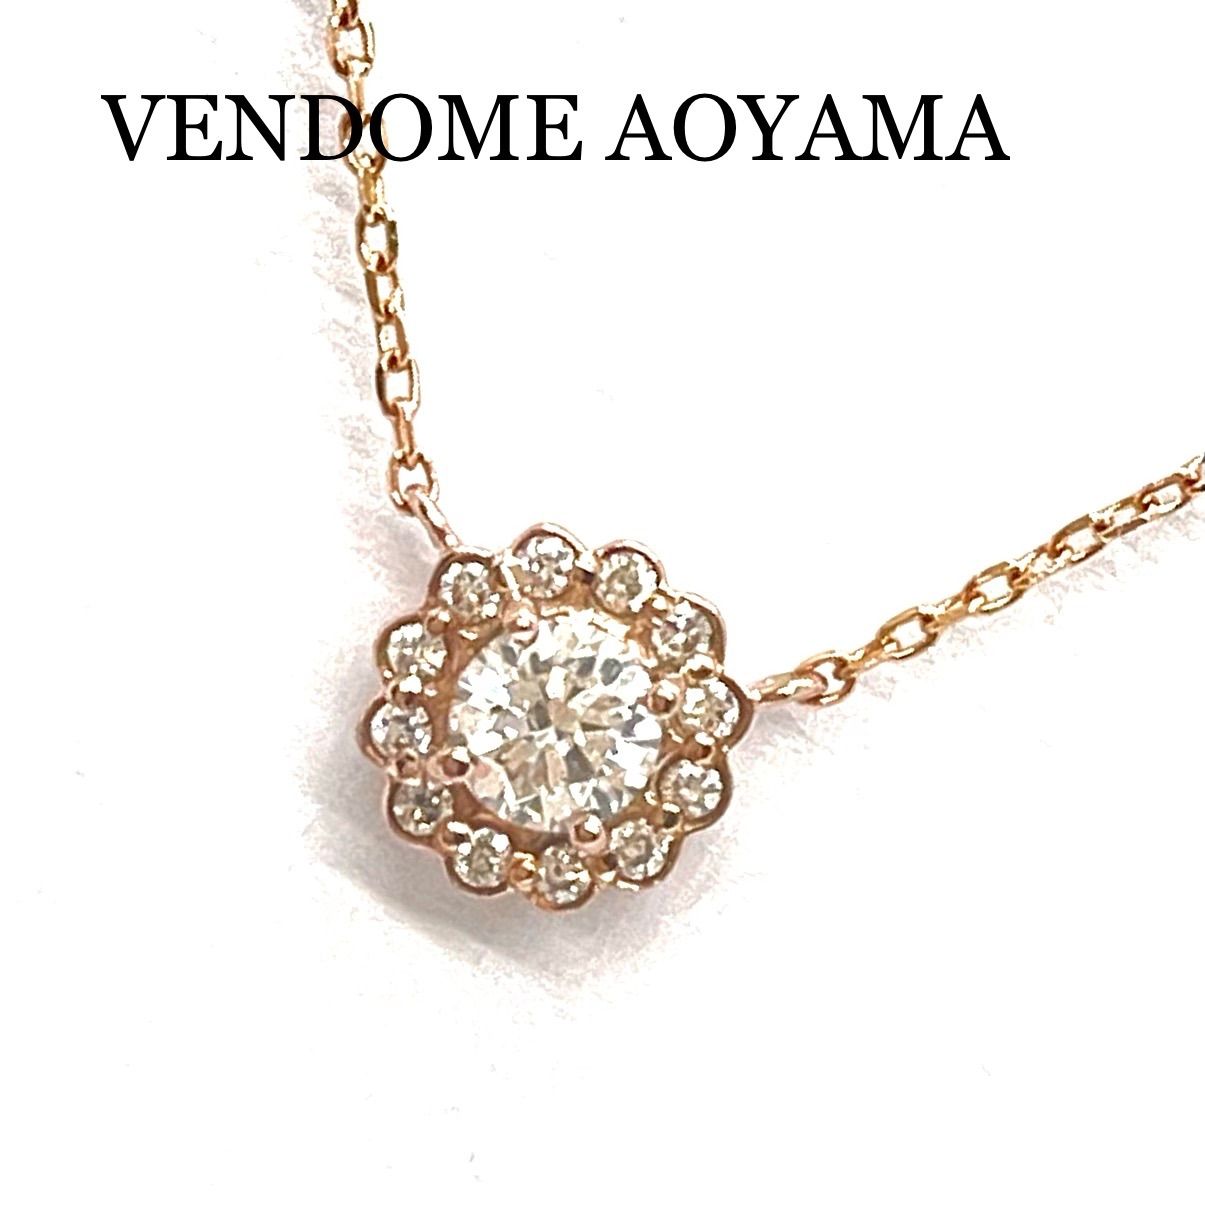 【美品】VENDOME AOYAMA ヴァンドーム青山 ネックレス K18YG/ダイヤモンド0.25ct約08g付属品